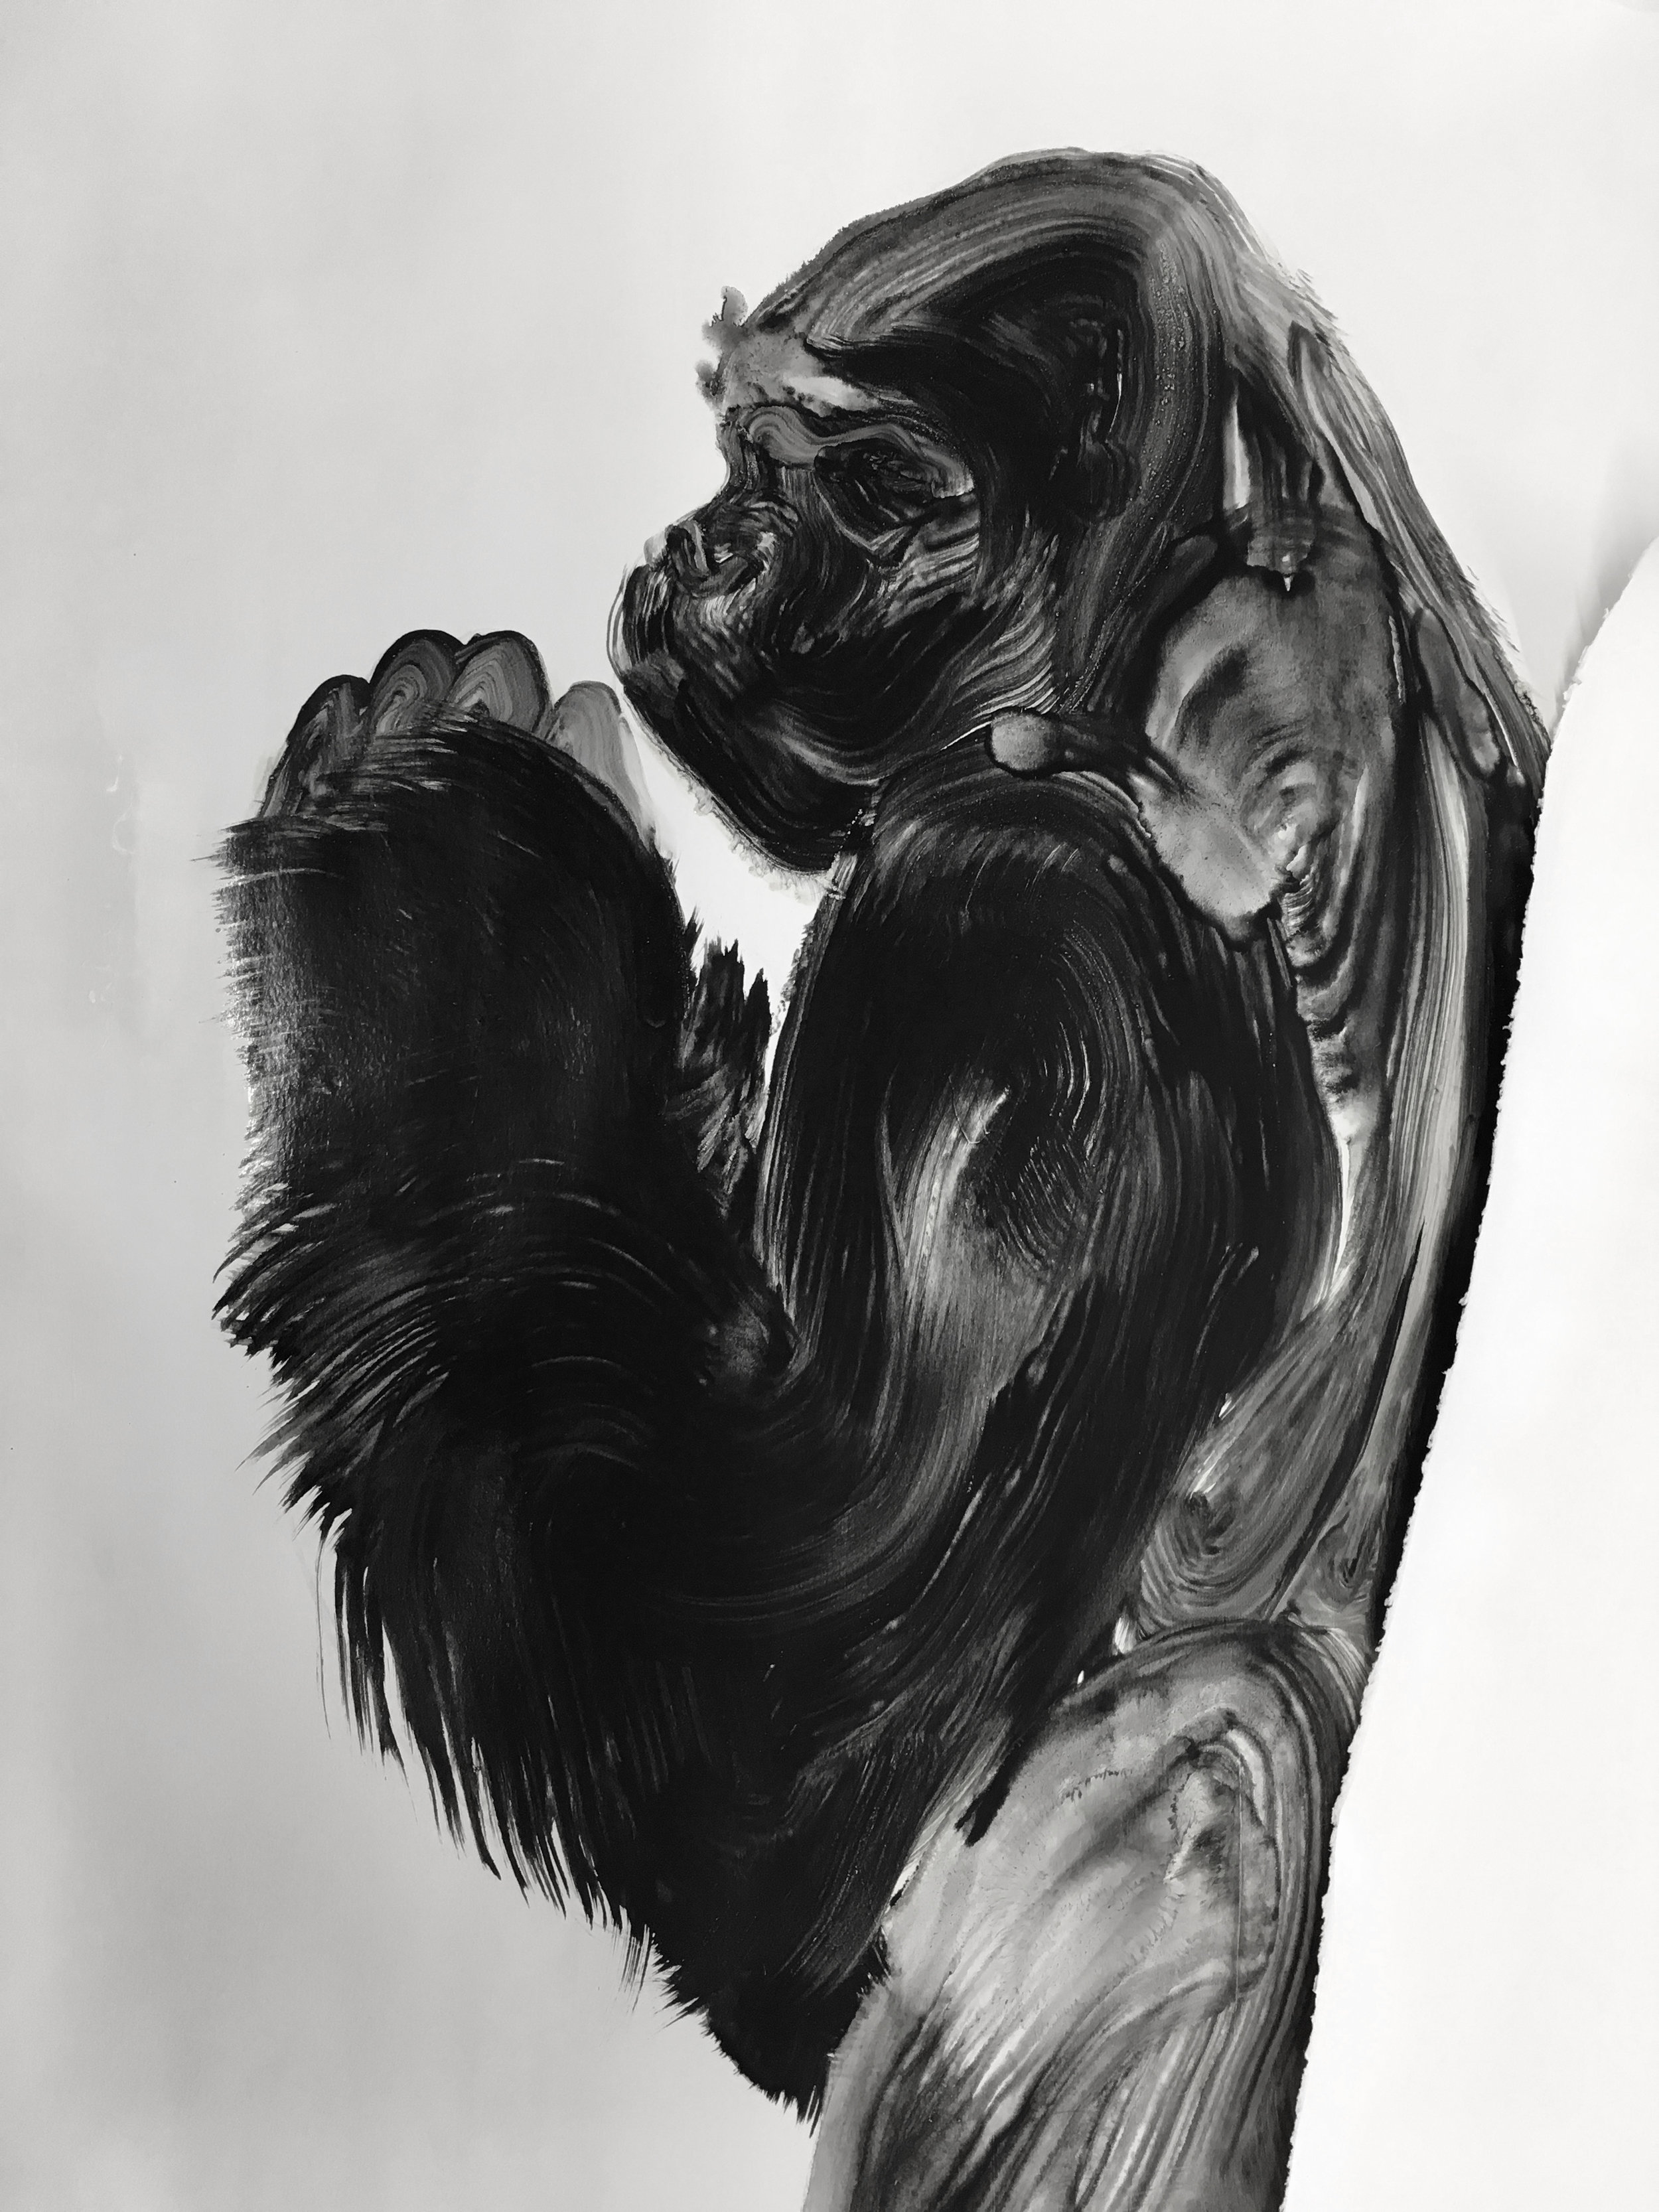  Détail, série des gorilles  Huile sur papier       